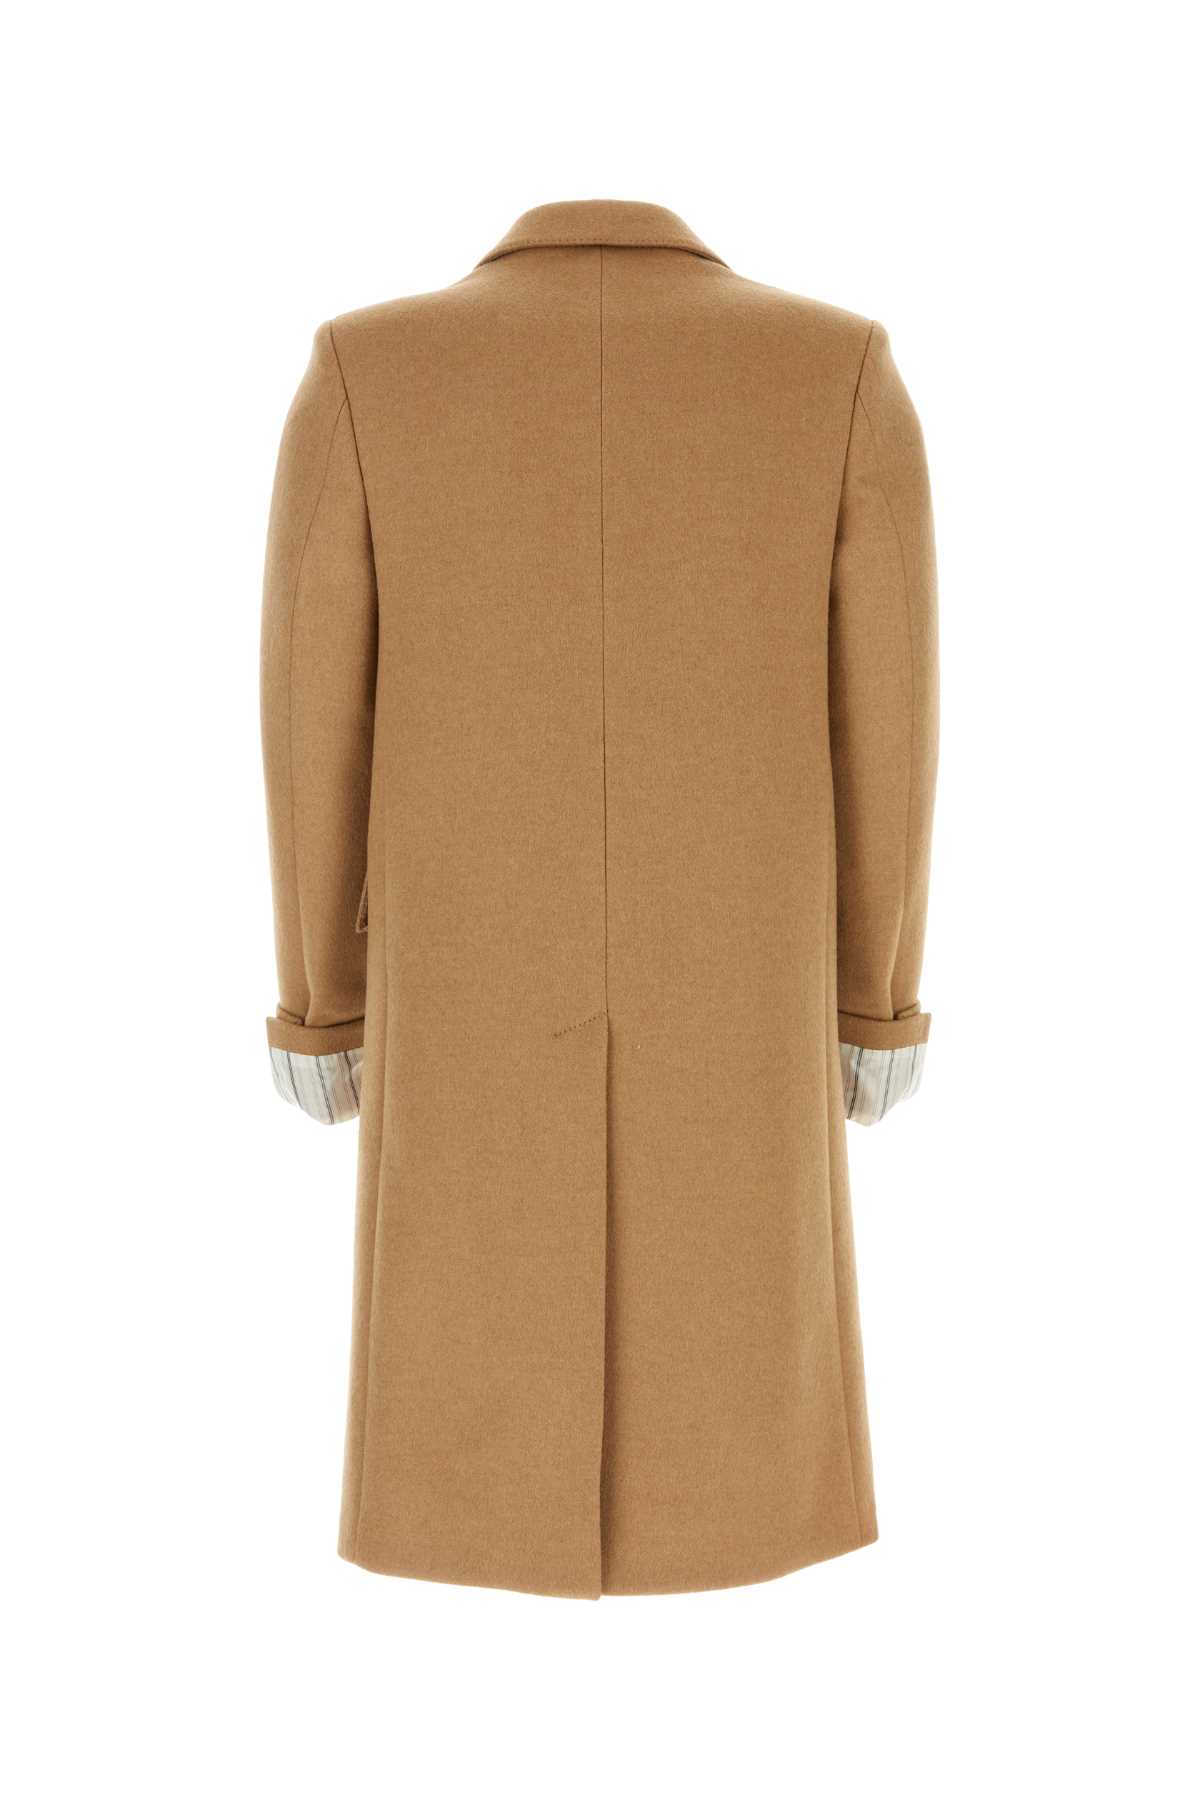 Gucci Camel Wool Coat